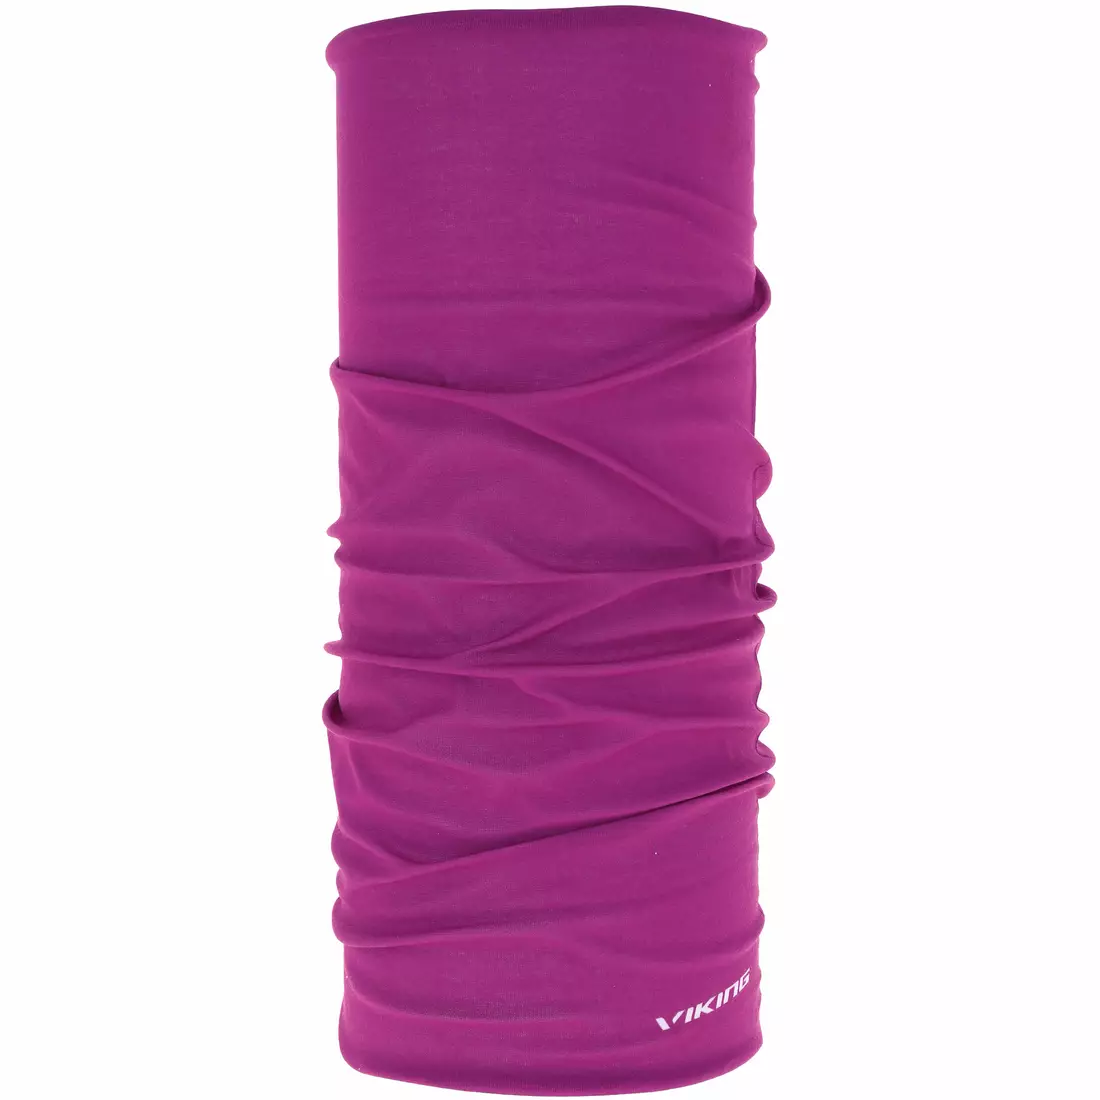 VIKING multifunctional bandana 1214 REGULAR pink 410/21/1214/46